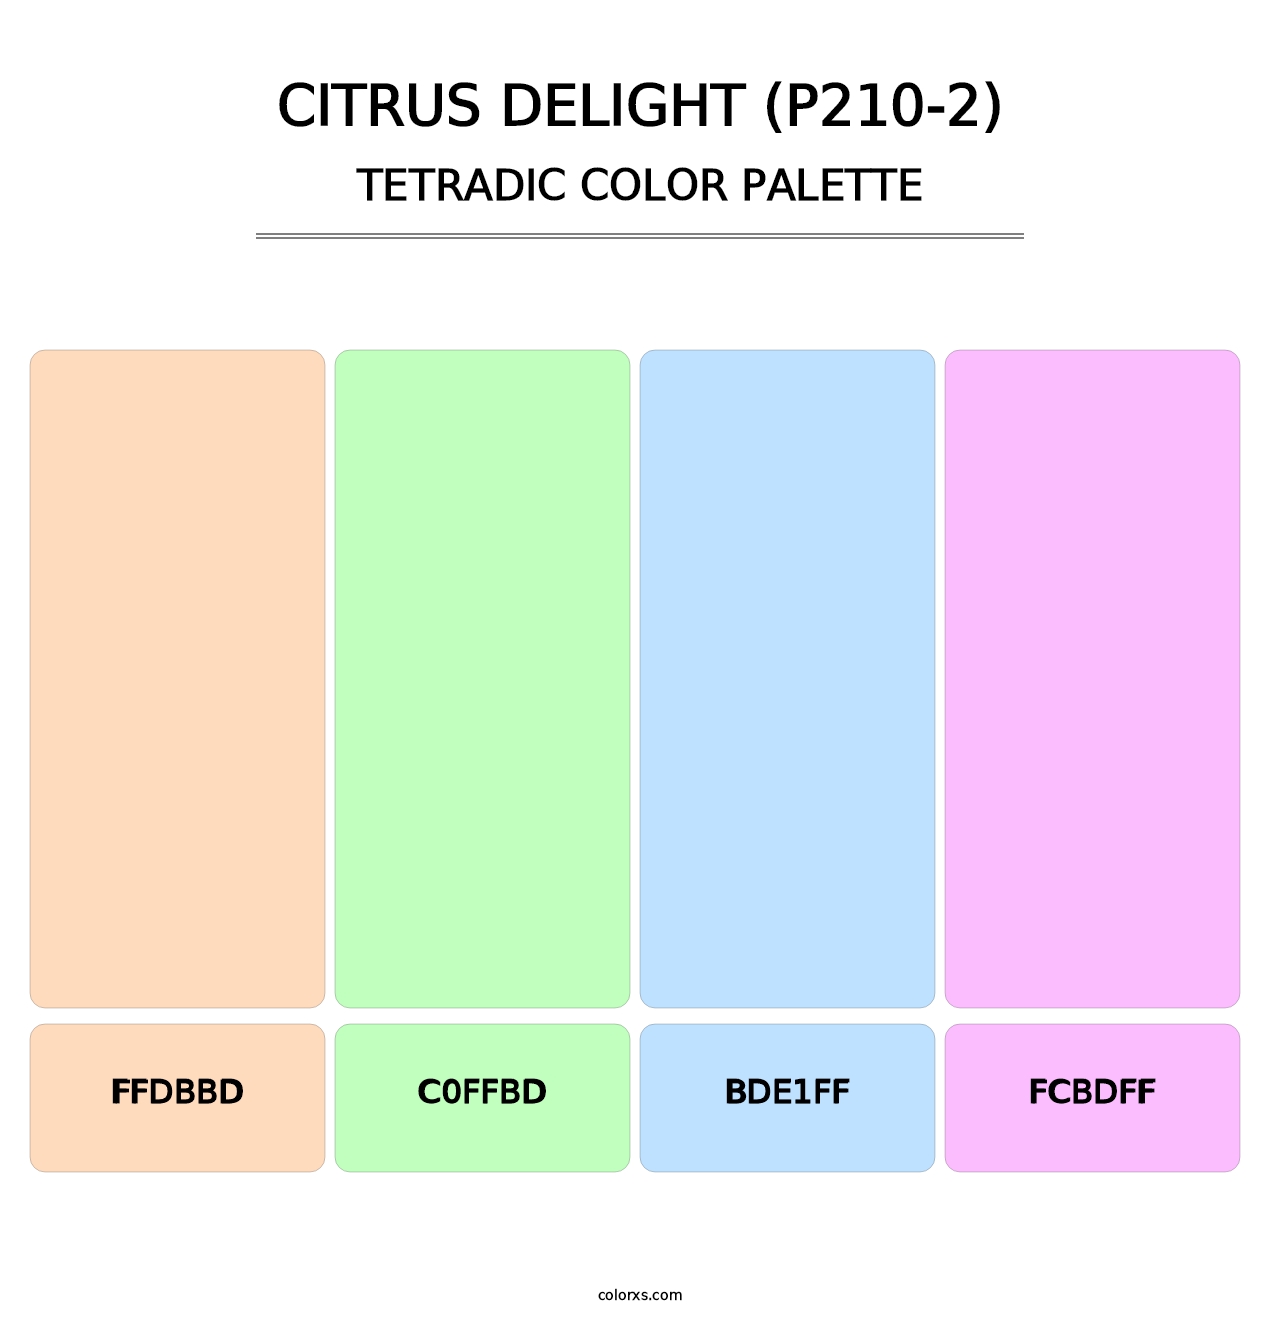 Citrus Delight (P210-2) - Tetradic Color Palette